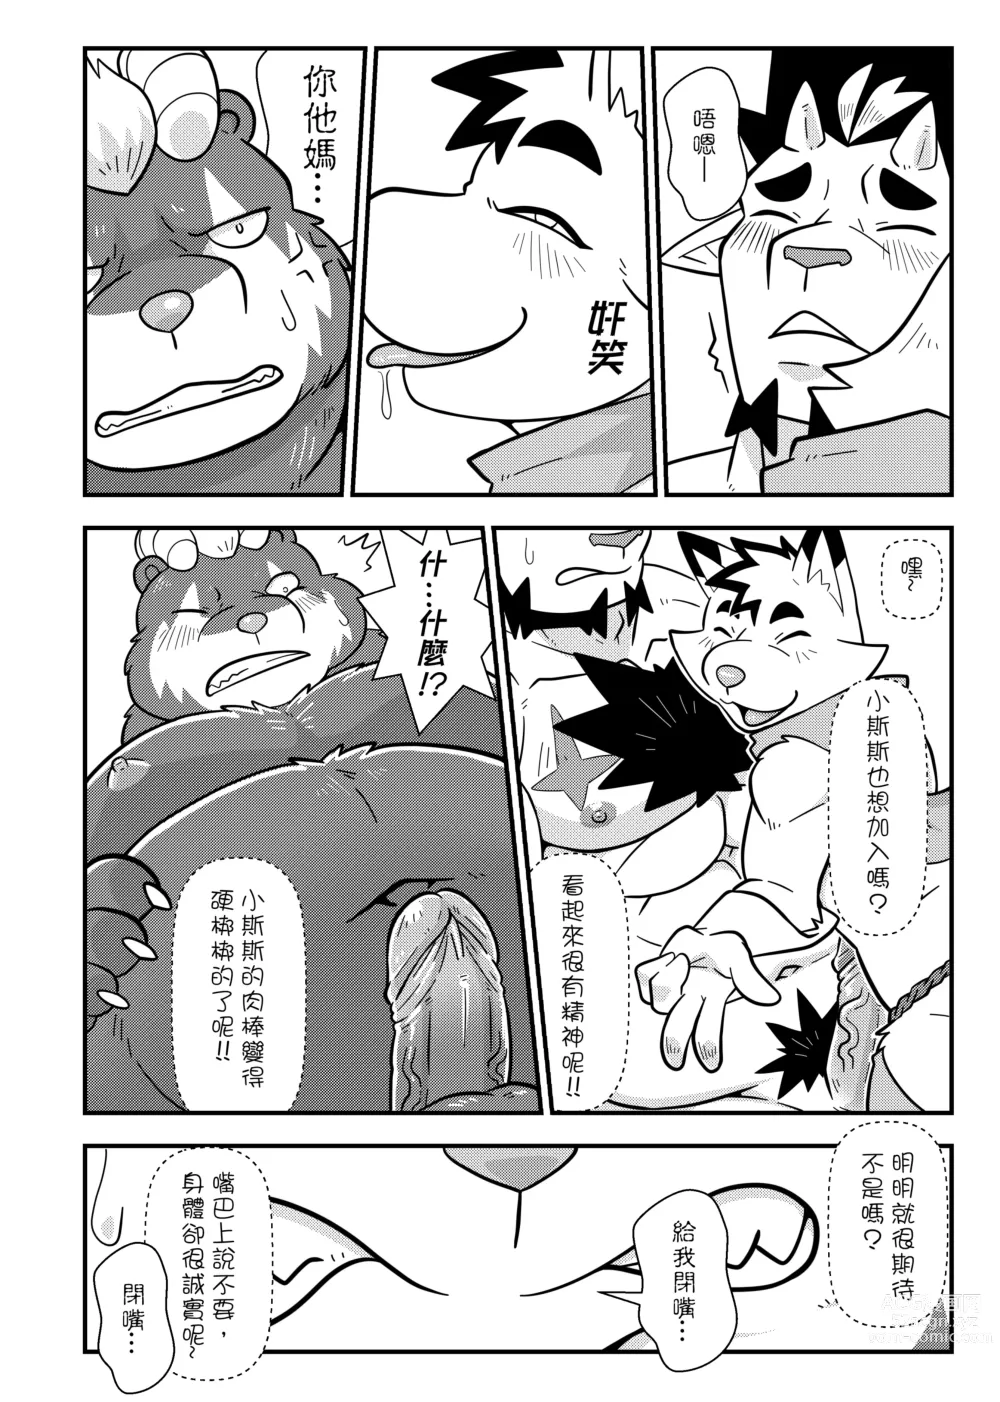 Page 13 of doujinshi 勇者的大小只有魔王塞得下4